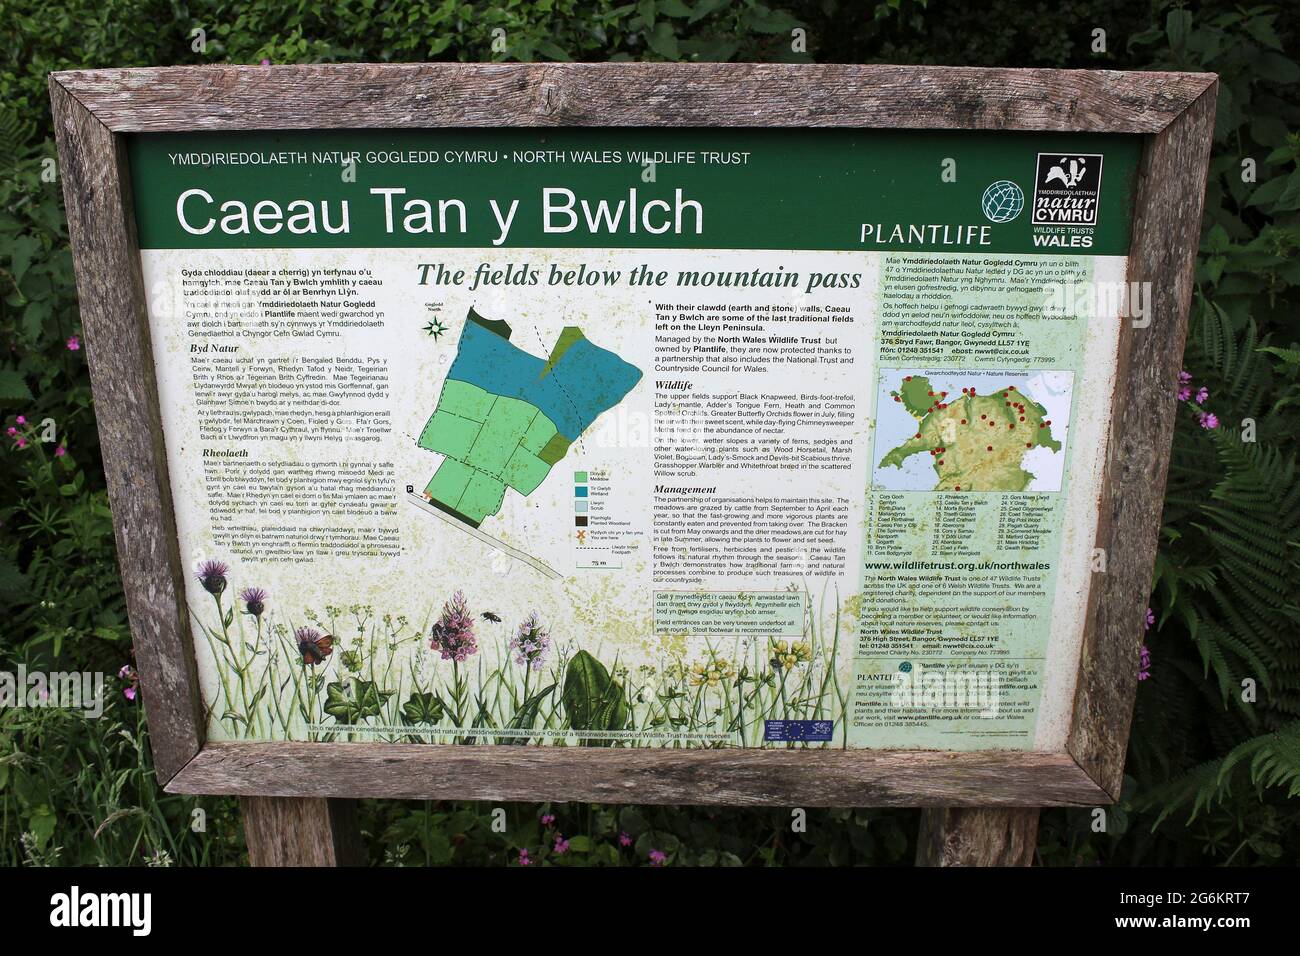 Panneau de réserve naturelle Caeau Tan y Bwlch, North Wales Wildlife Trust & Plantlife, péninsule de Llŷn, pays de Galles Banque D'Images